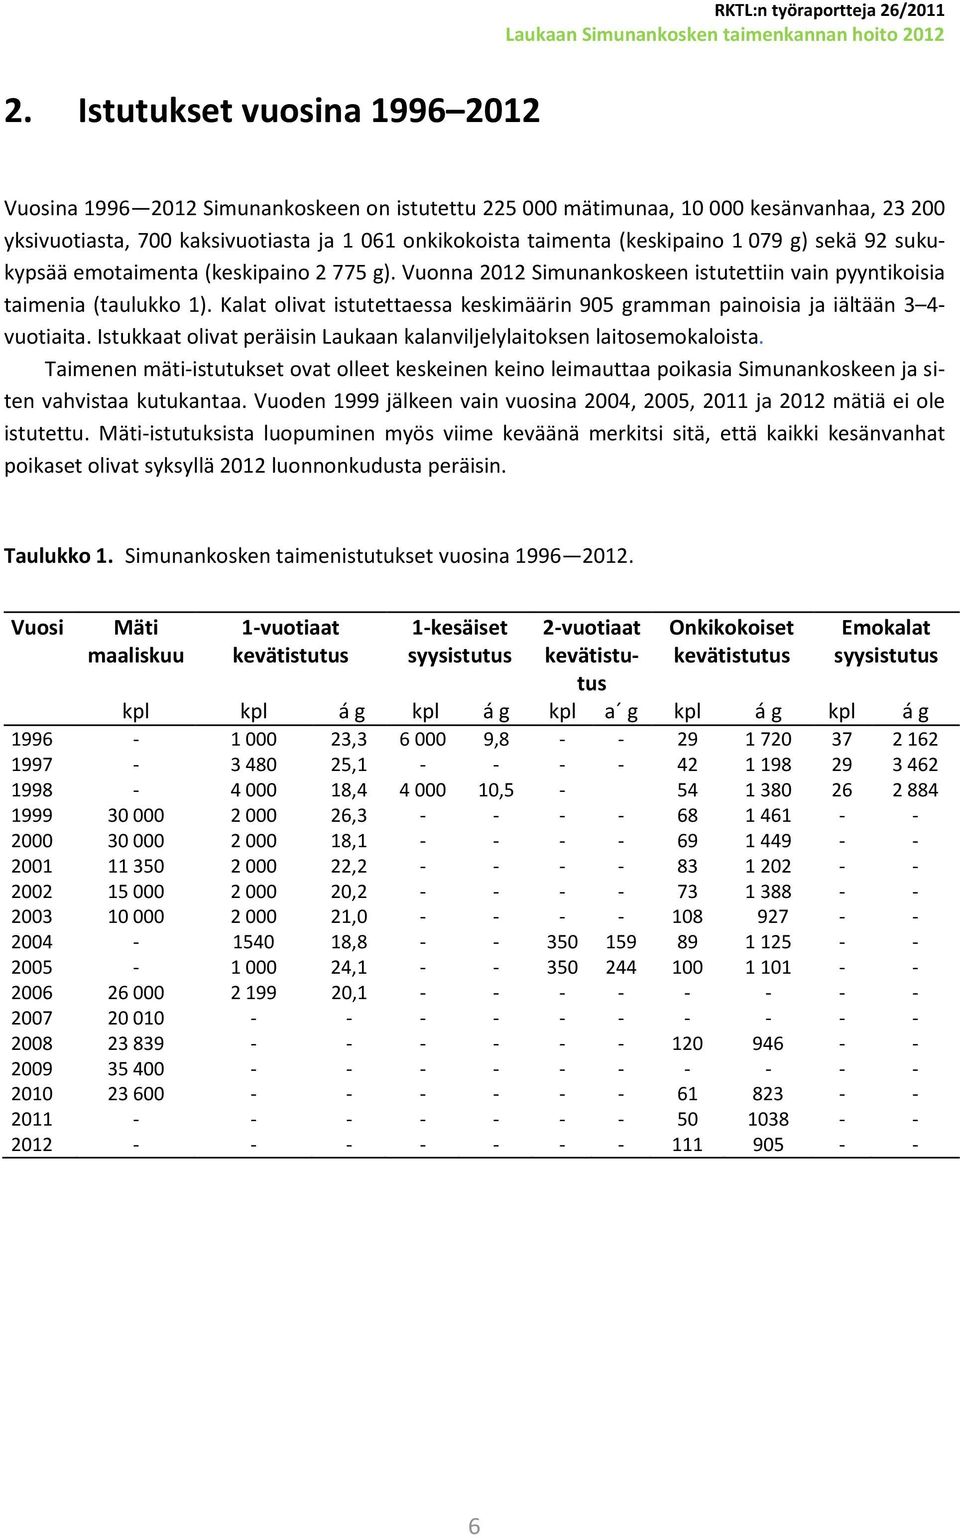 079 g) sekä 92 sukukypsää emotaimenta (keskipaino 2 775 g). Vuonna 2012 Simunankoskeen istutettiin vain pyyntikoisia taimenia (taulukko 1).